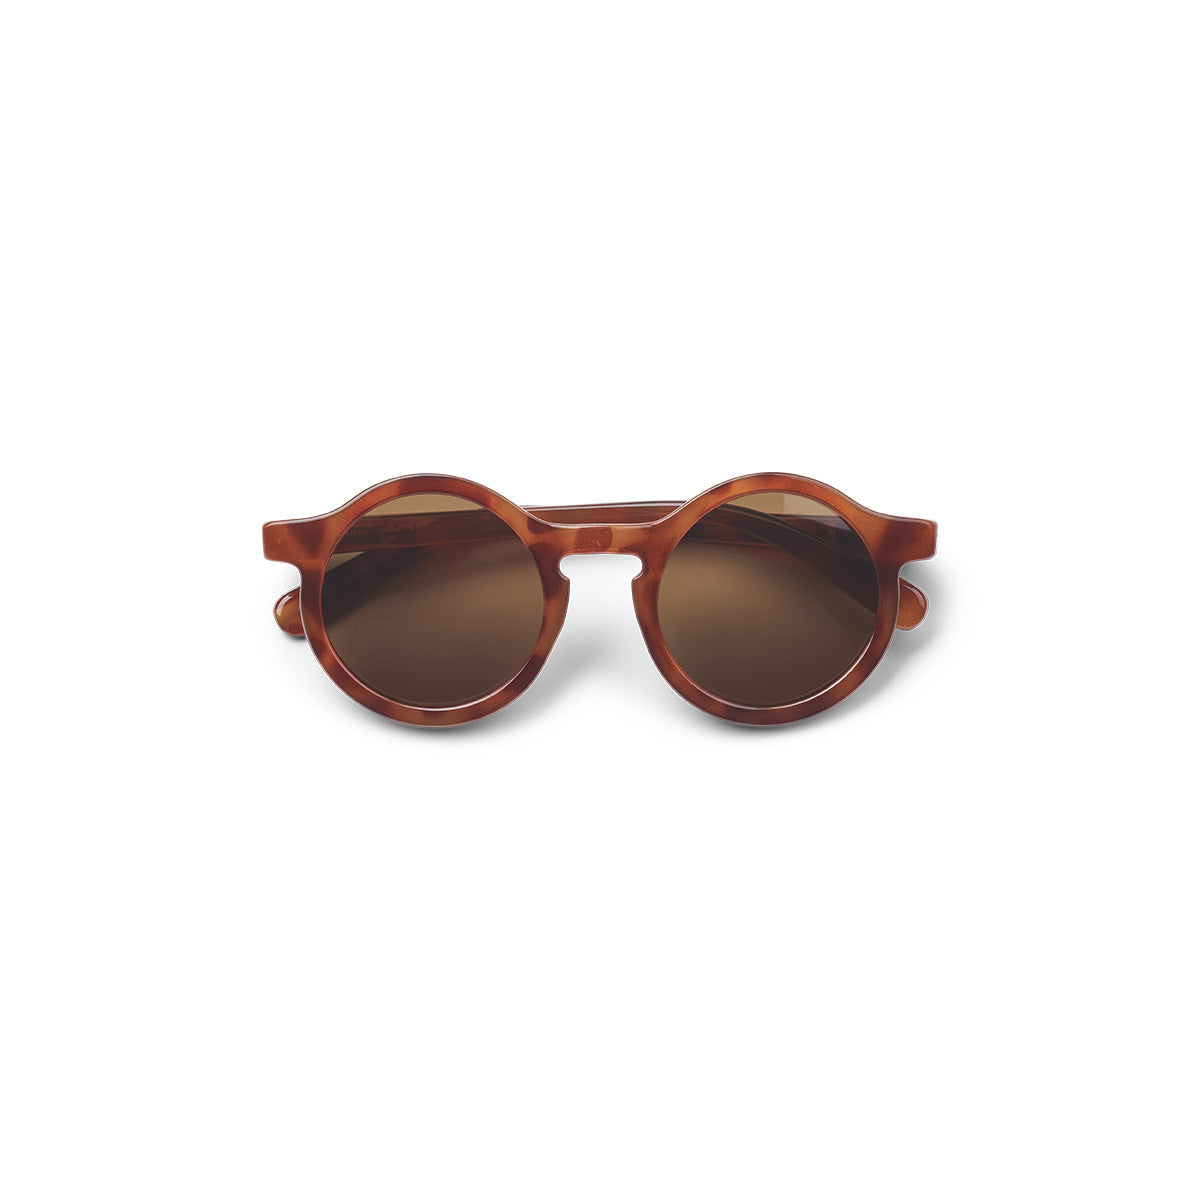 De Liewood darla zonnebril light tortoise/shiny is het perfecte accessoire voor jouw kindje tijdens de lente en zomer. Deze toffe zonnebril heeft dankzij de ronde glazen een retro en speelse look. VanZus.